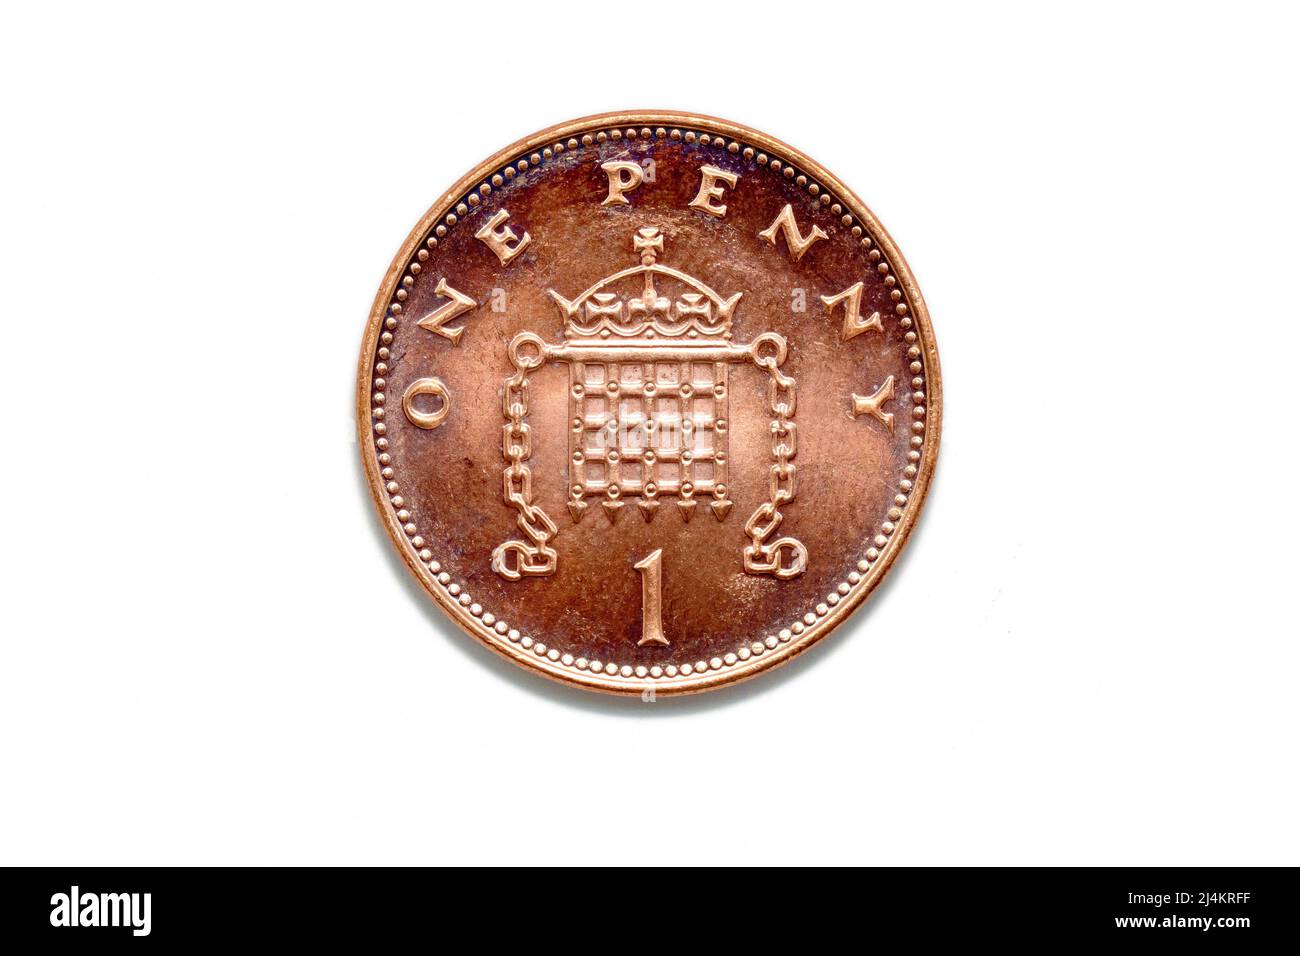 Nahaufnahme des 1982-2008-Designs der Schwanzseite eines UK-Dezimalstücks mit 1 Pence, auch bekannt als Penny, isoliert vor einem weißen Hintergrund. Stockfoto